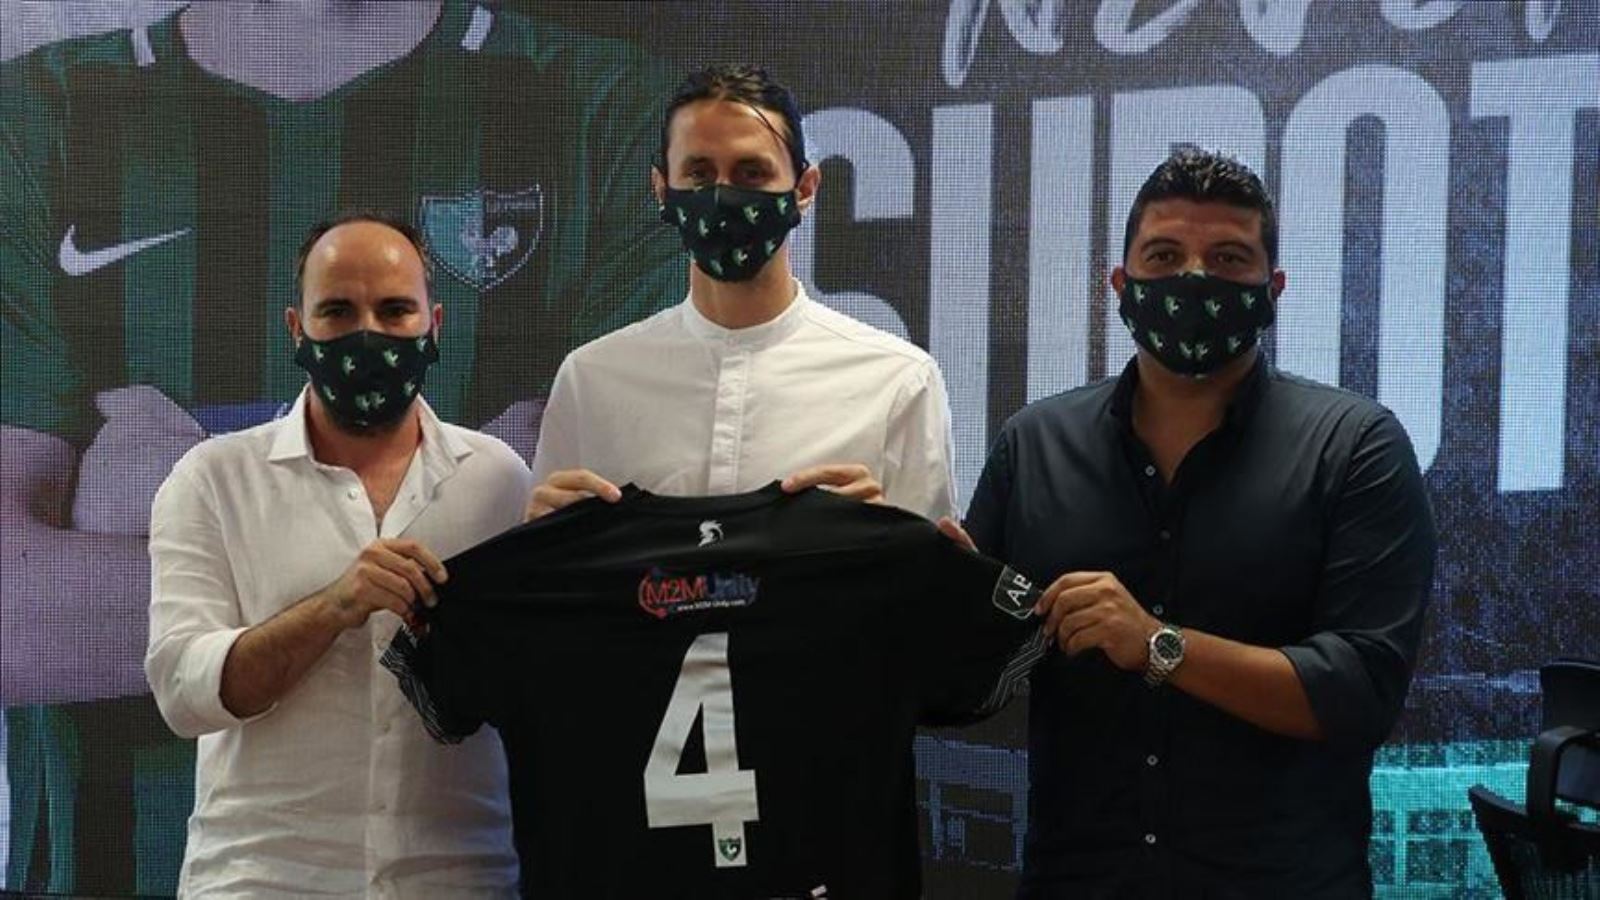 Denizlispor'a Sırp oyuncu Subotic nedeniyle transfer yasağı geldi